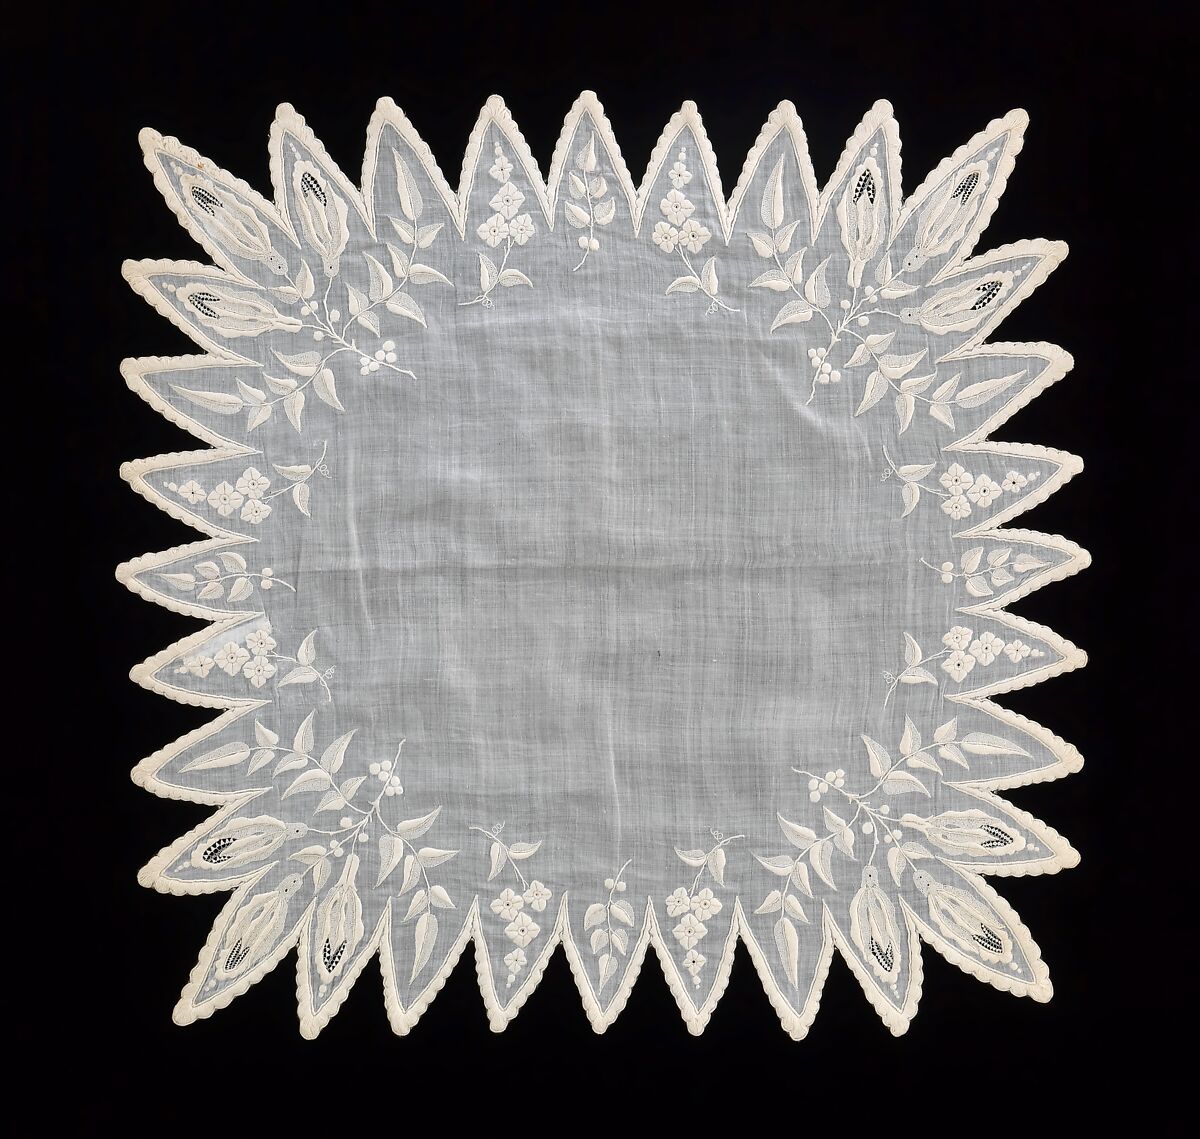 Handkerchief, cotton, probably American 